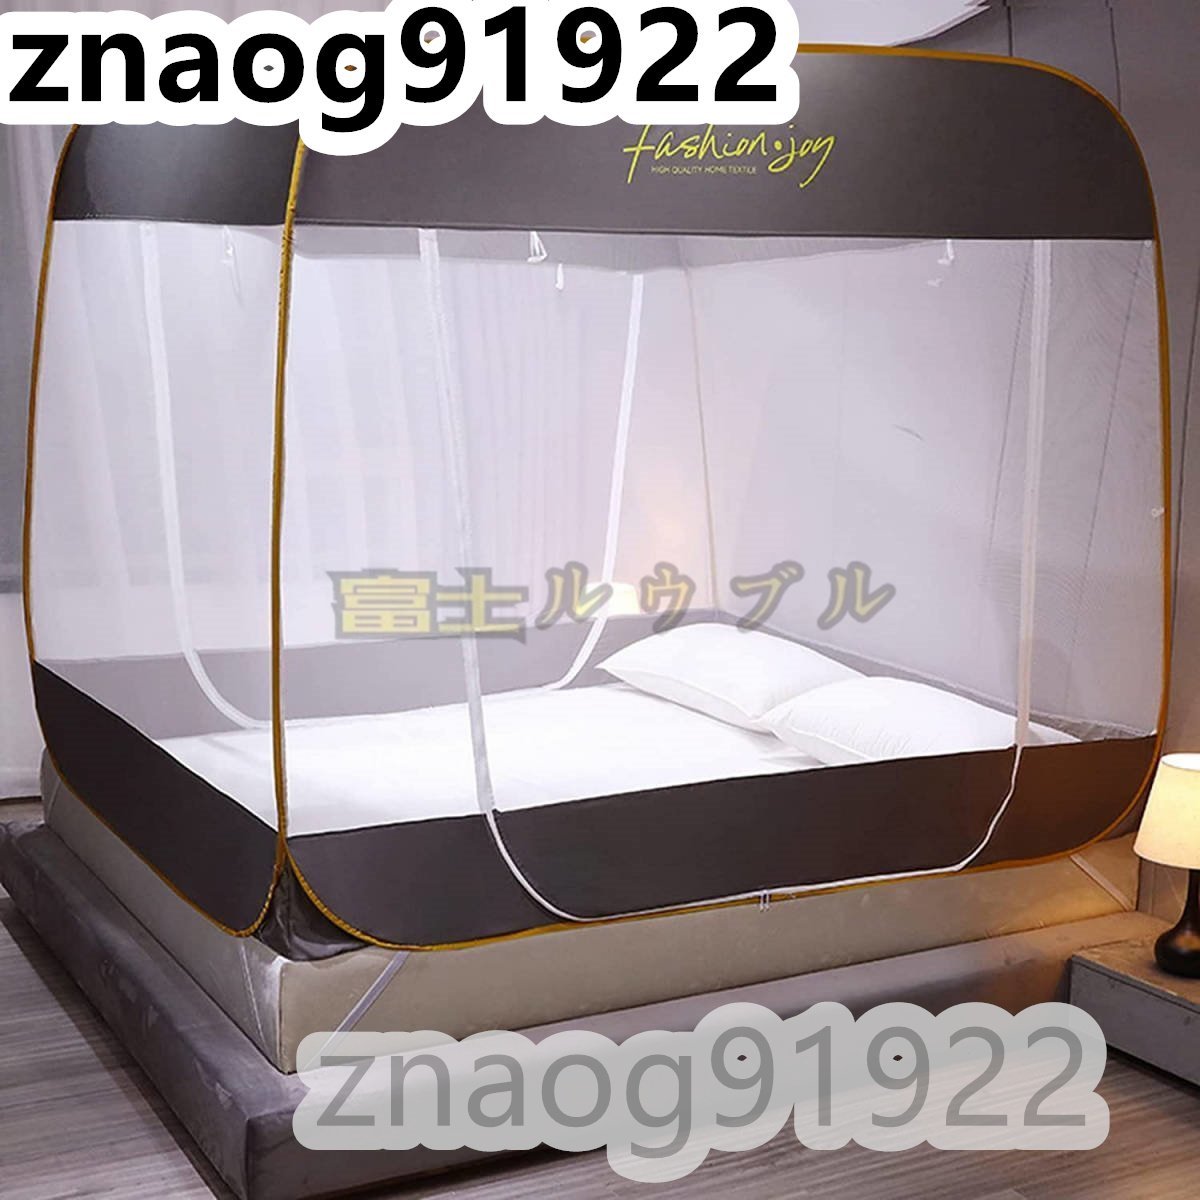 蚊帳 ワンタッチ 底付き シングルベッド用 ダブルベッド 3ドア設計 かや 蚊帳 ベッド用 畳 大型 キャンプ式 収納袋付-120x195x155cm_画像1